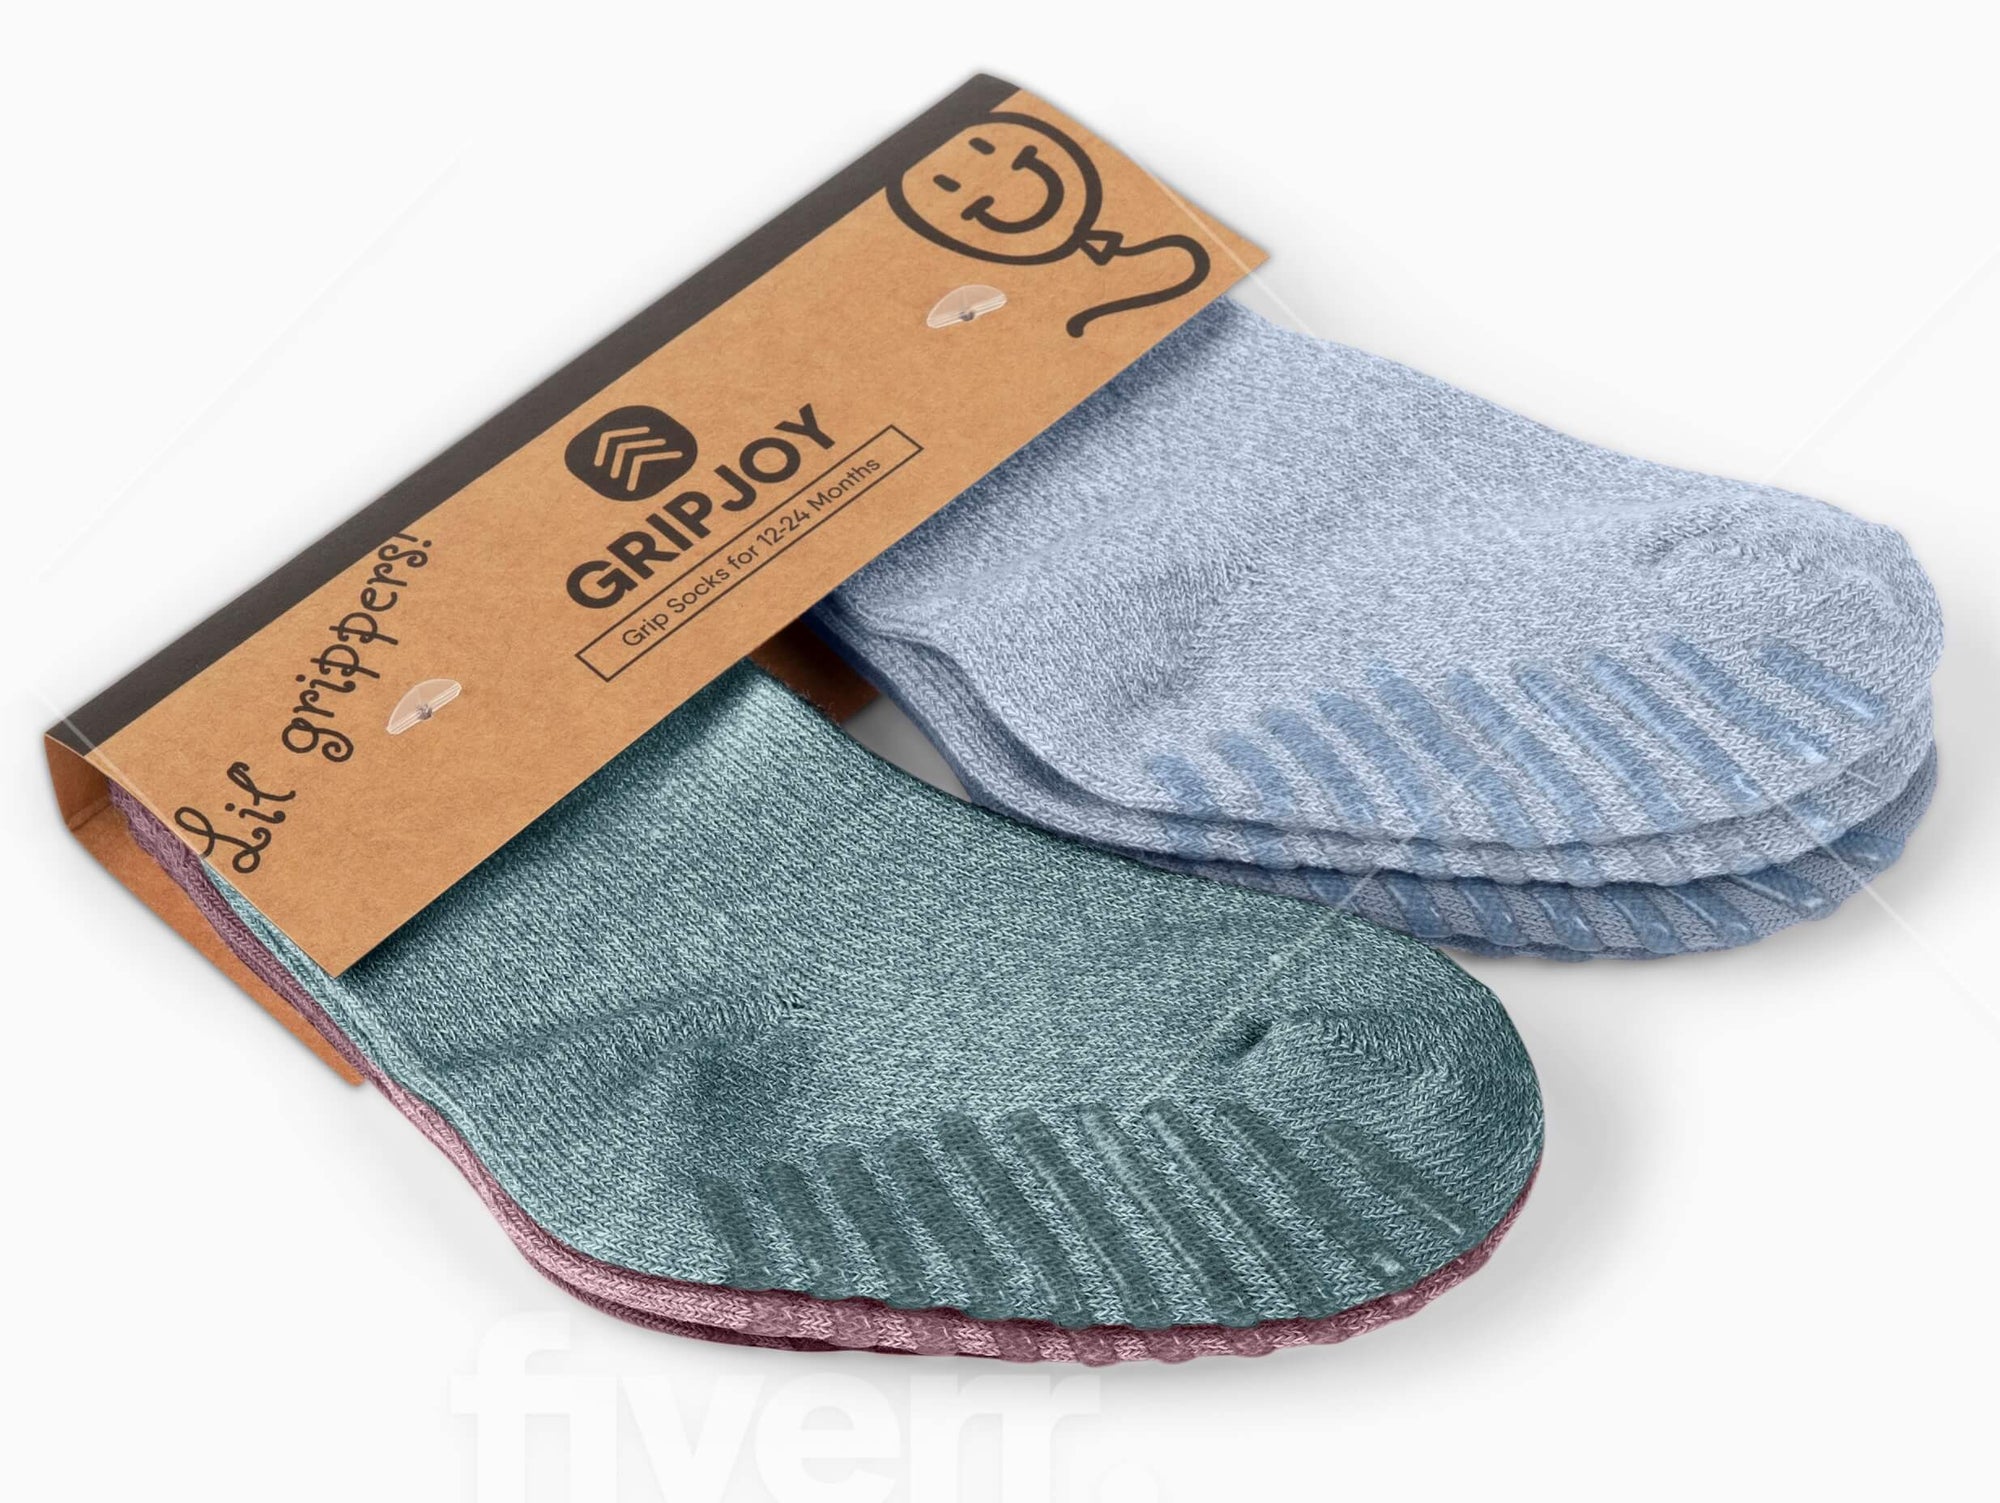 Green, Blue, Maroon Grip Socks for Toddlers & Kids - 4 pairs - Gripjoy Socks